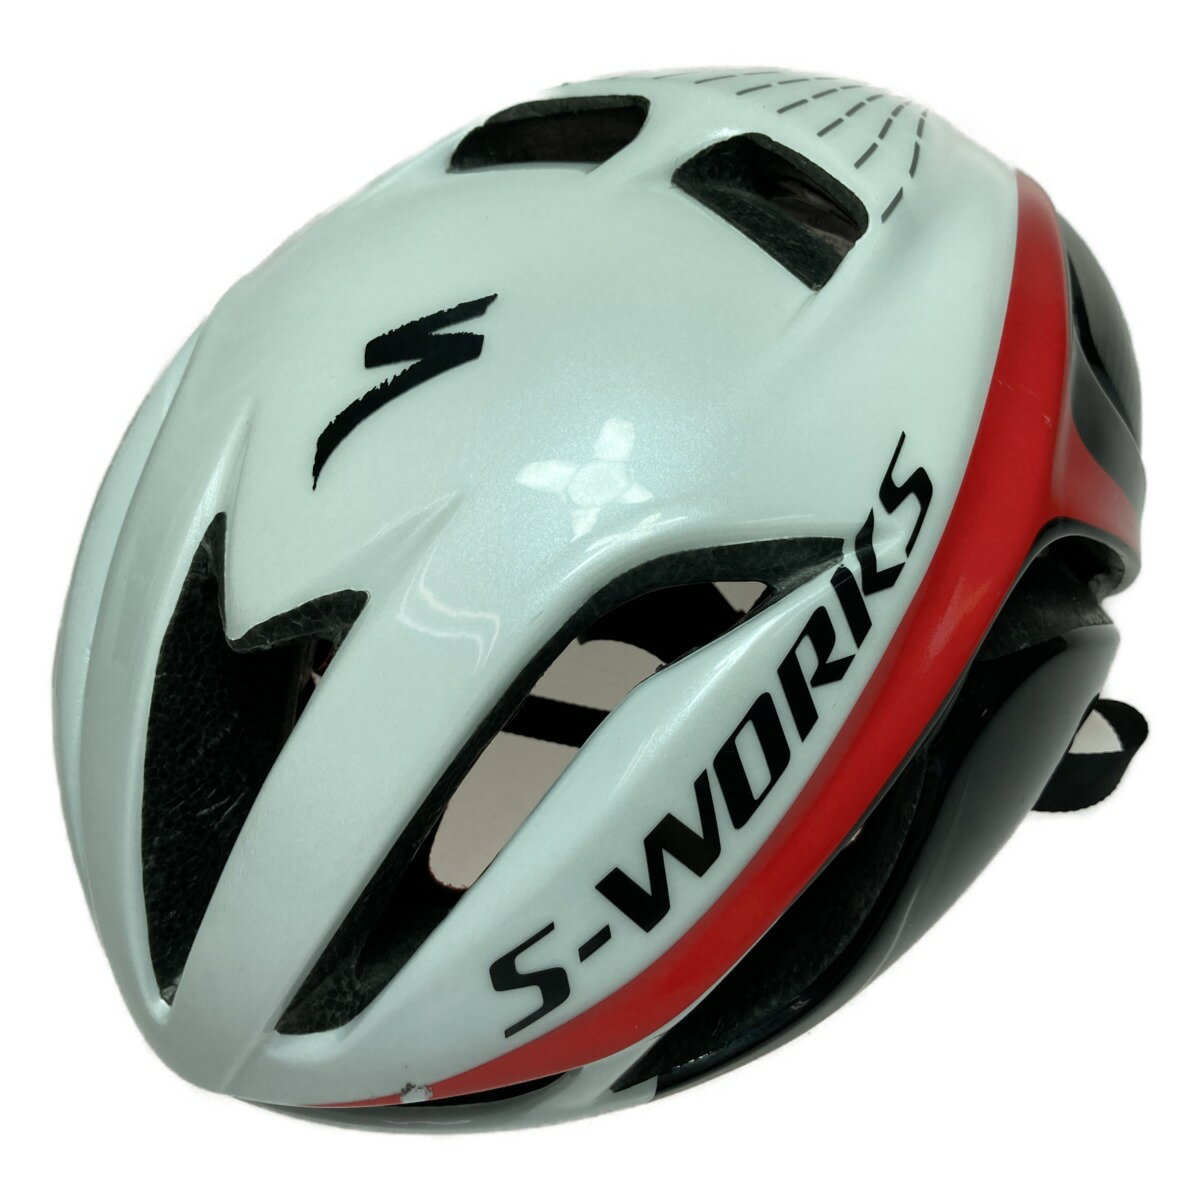 ◎◎【中古】S-Works EVADE Specialized スペシャライズド サイクリング ヘルメット 54-60cm S/M 284g Cランク